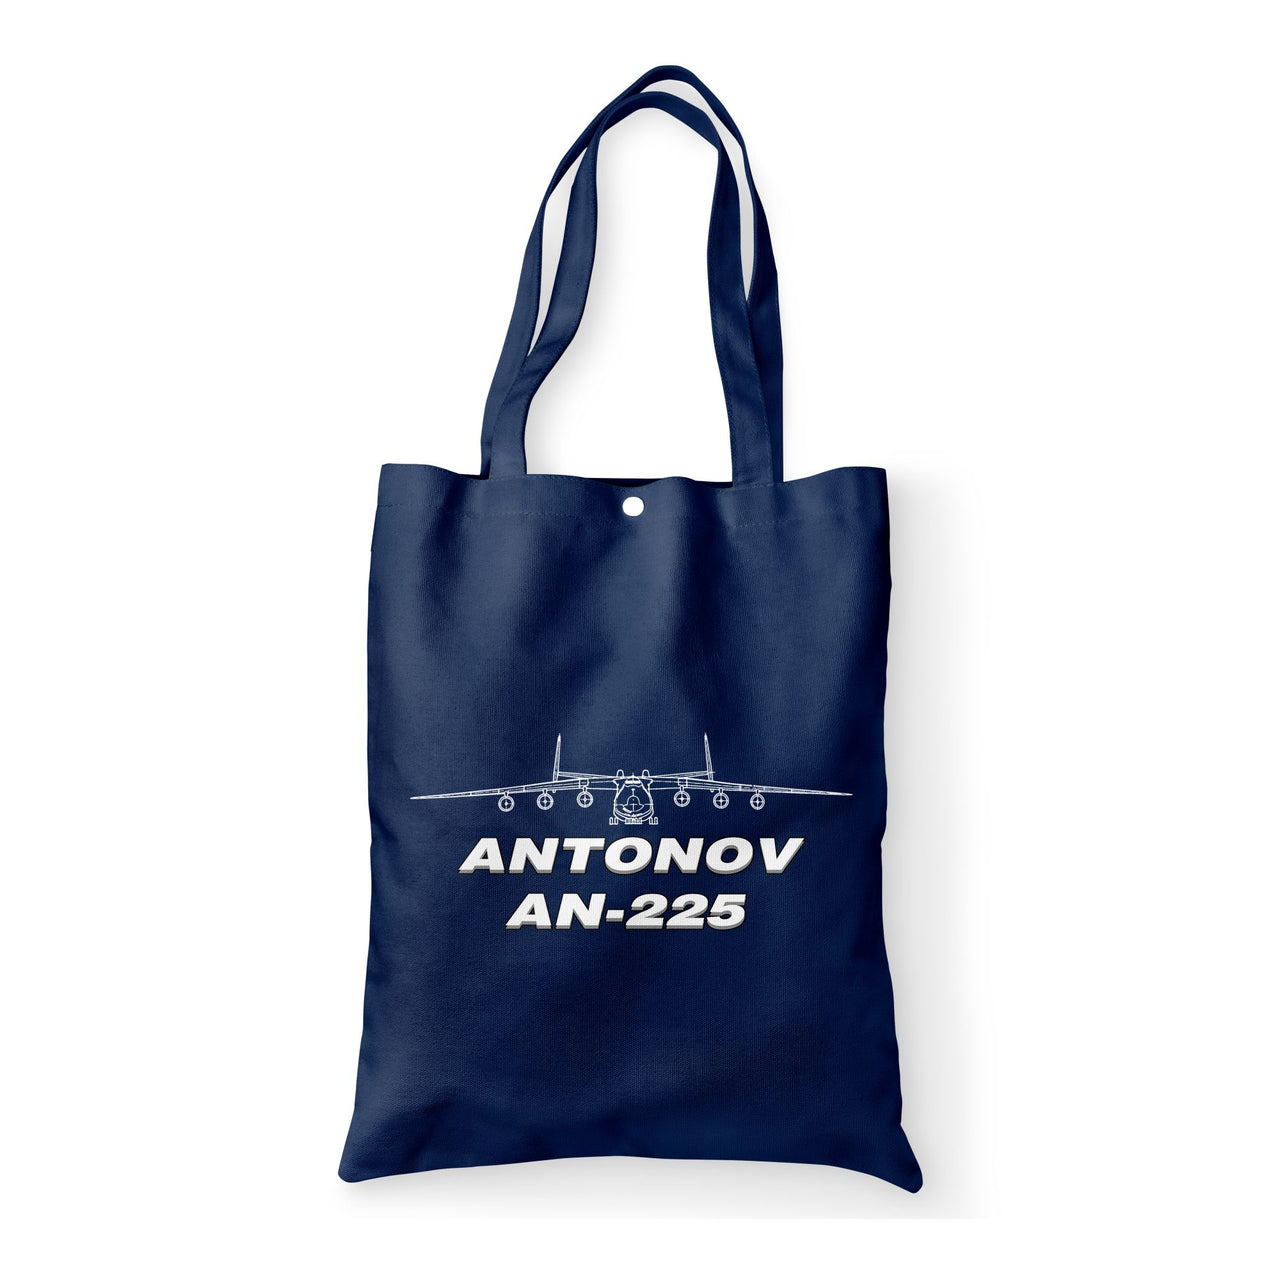 Antonov AN-225 (26) Designed Tote Bags